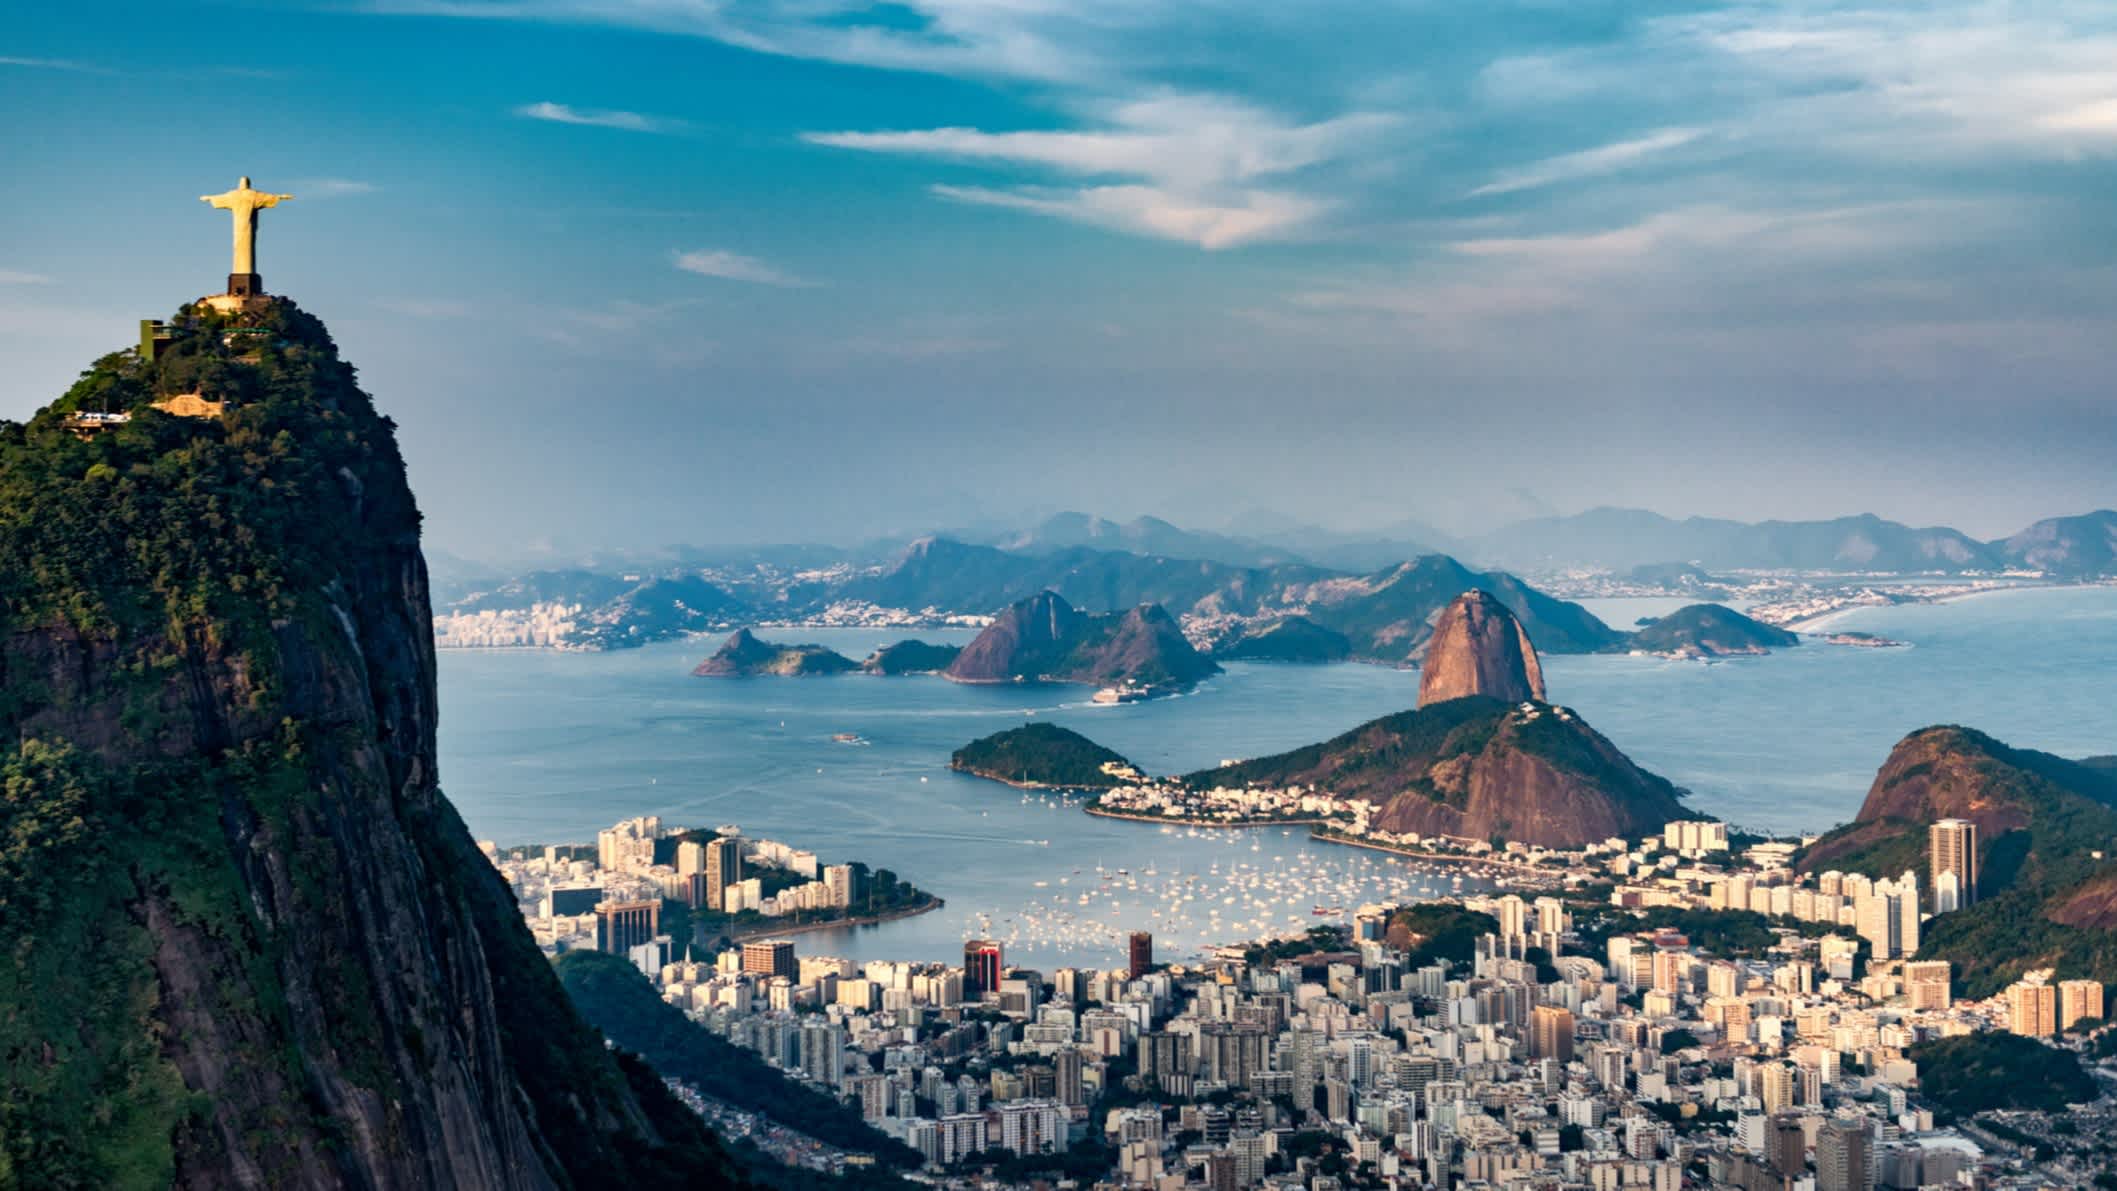 Luftaufnahme von Rio De Janeiro. Der Berg Corcovado mit der Christus-Erlöser-Statue, die Stadtgebiete Botafogo, Flamengo und Centro, der Zuckerhut.